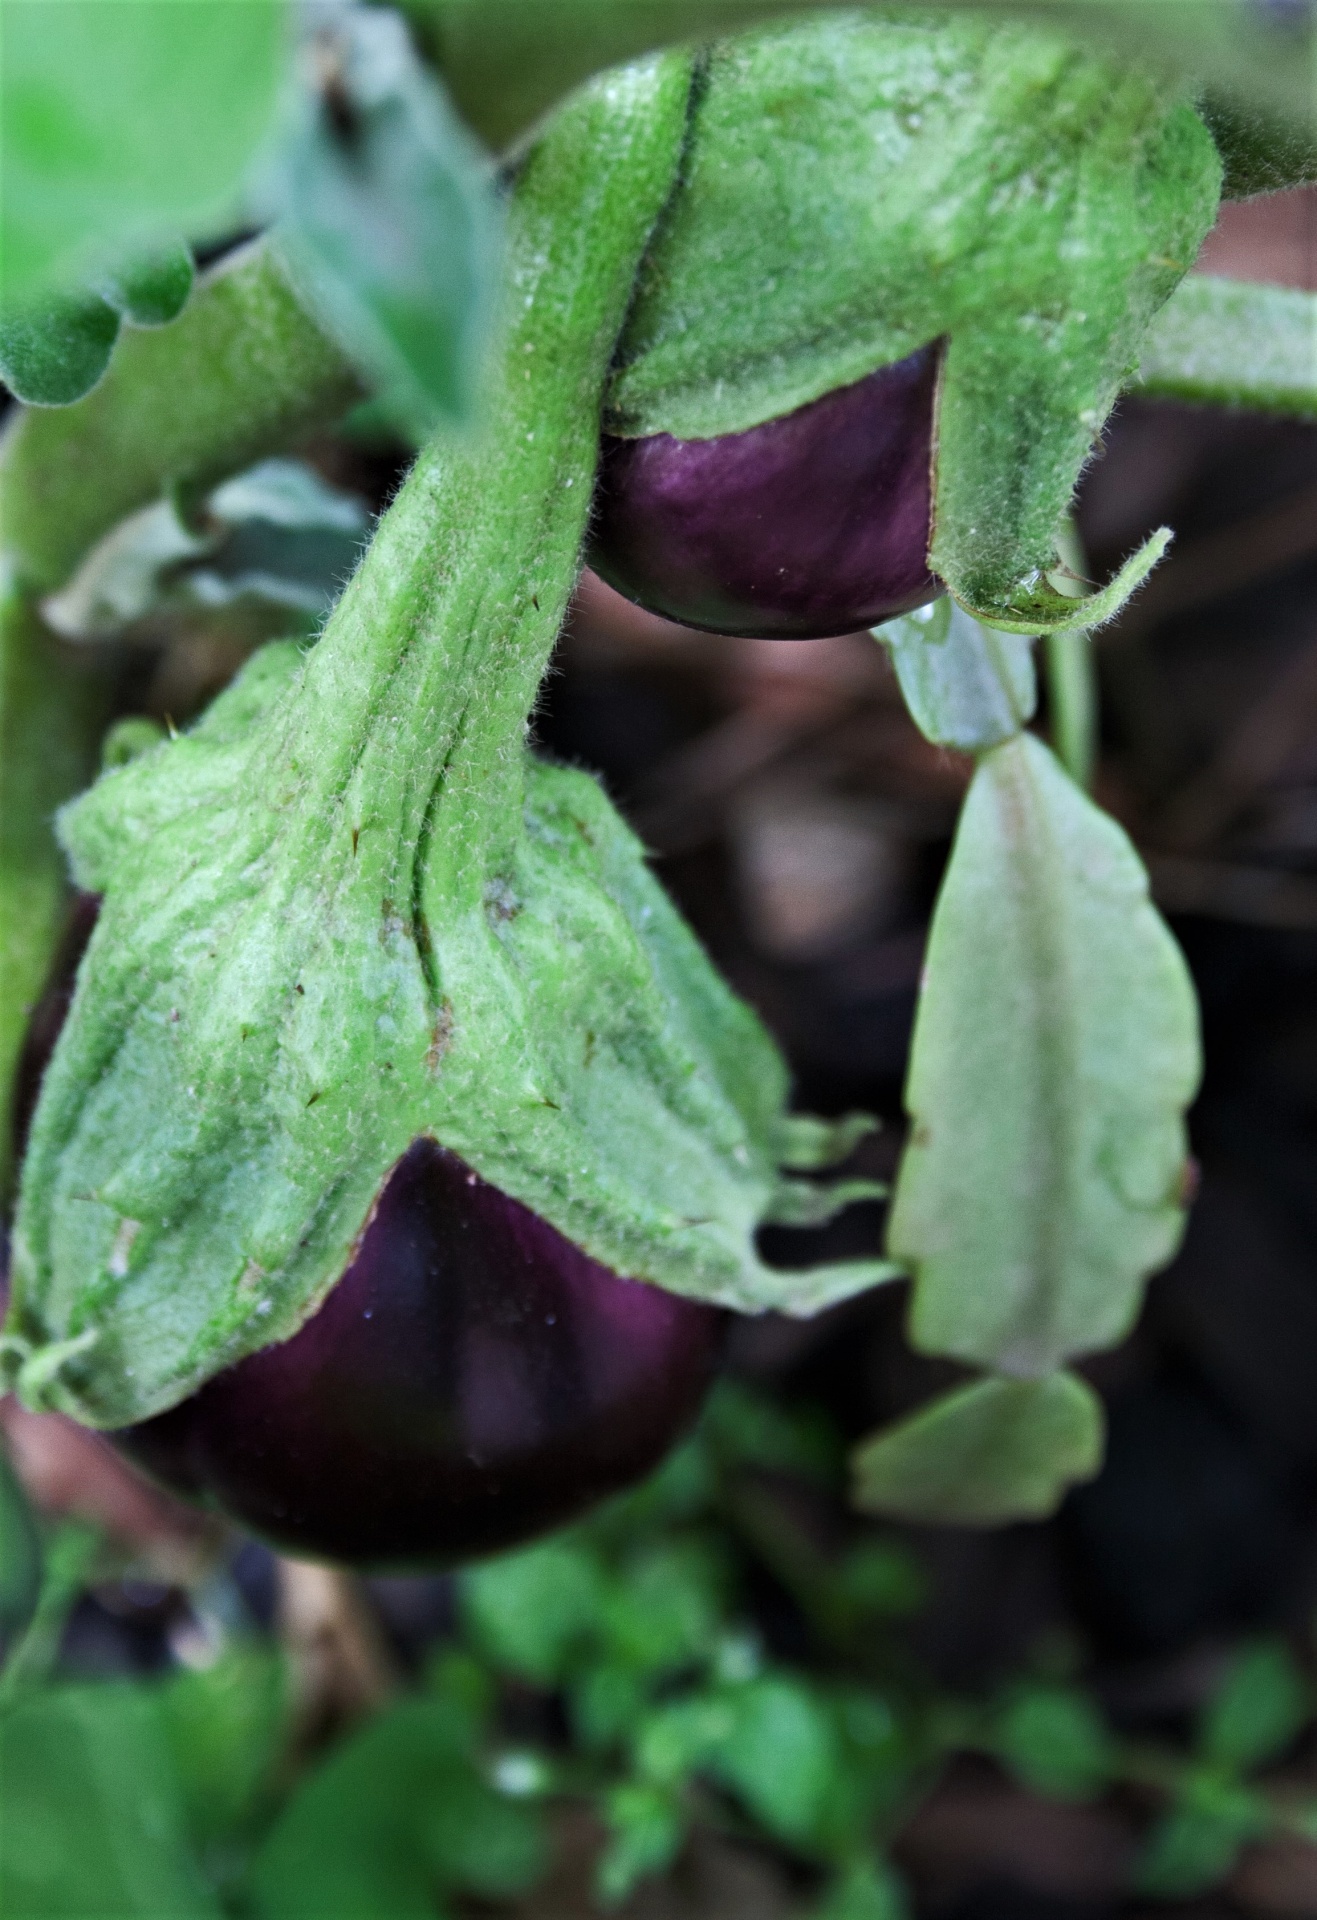 aubergine fruit on plant